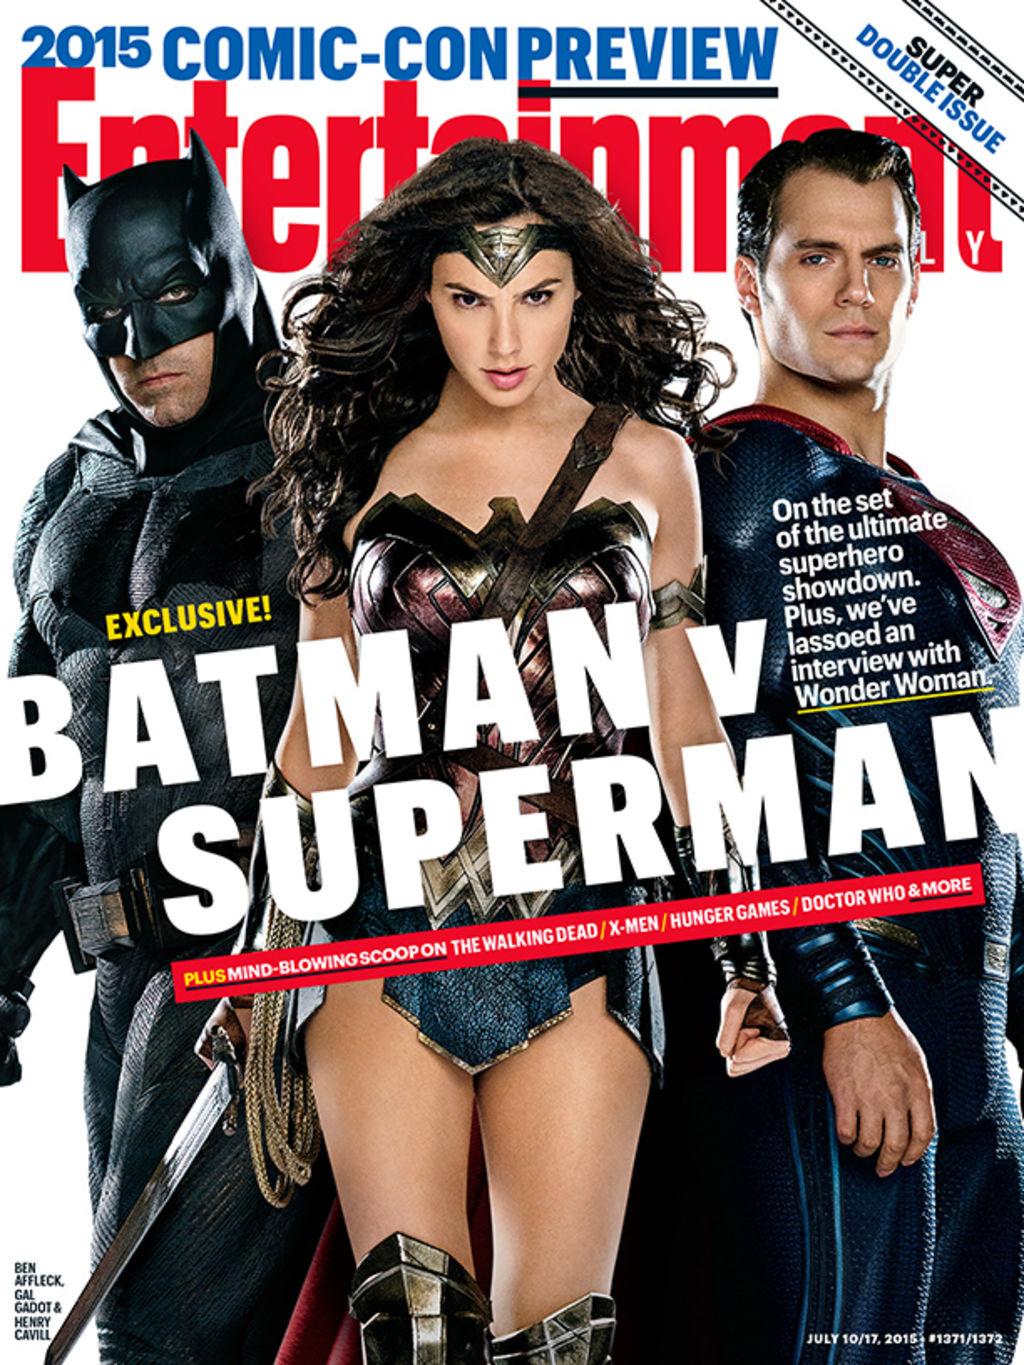 En la portada de la publicación, puede verse a la “Trinidad” (Como se le conoce en los comics a la unión de Batman, Wonder Woman y Superman), en una fotografía que ha vuelto locos a los fans de los paladines de la justicia. (Especial)